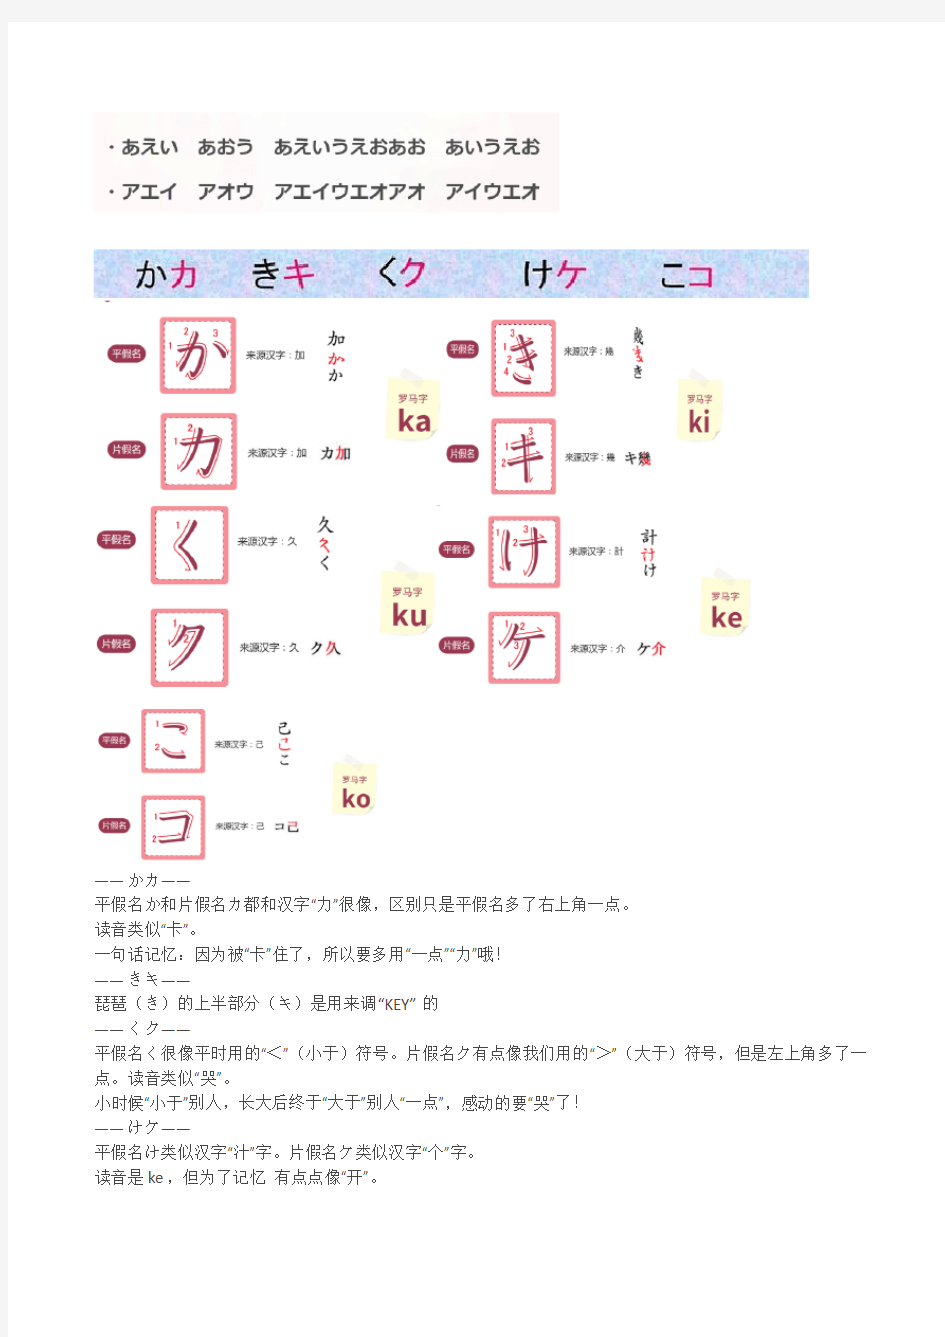 日语学习五十音图记忆和书写方法